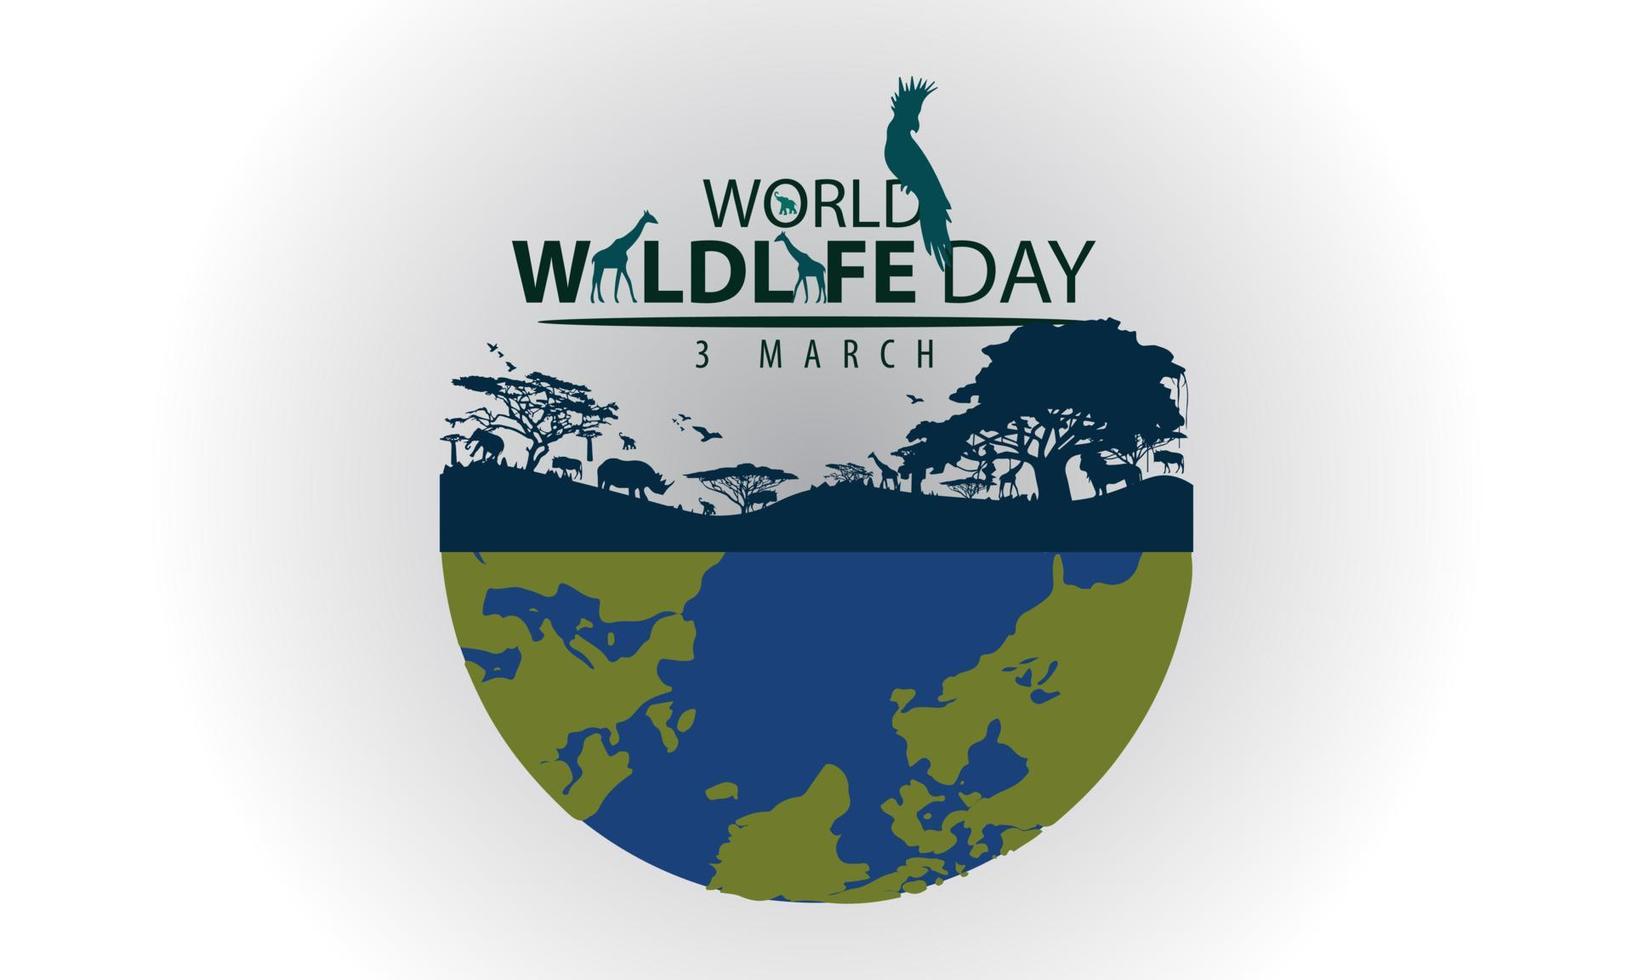 festividades do dia mundial da vida selvagem, animais, terra e floresta. design vetorial adequado para banners, planos de fundo. vetor